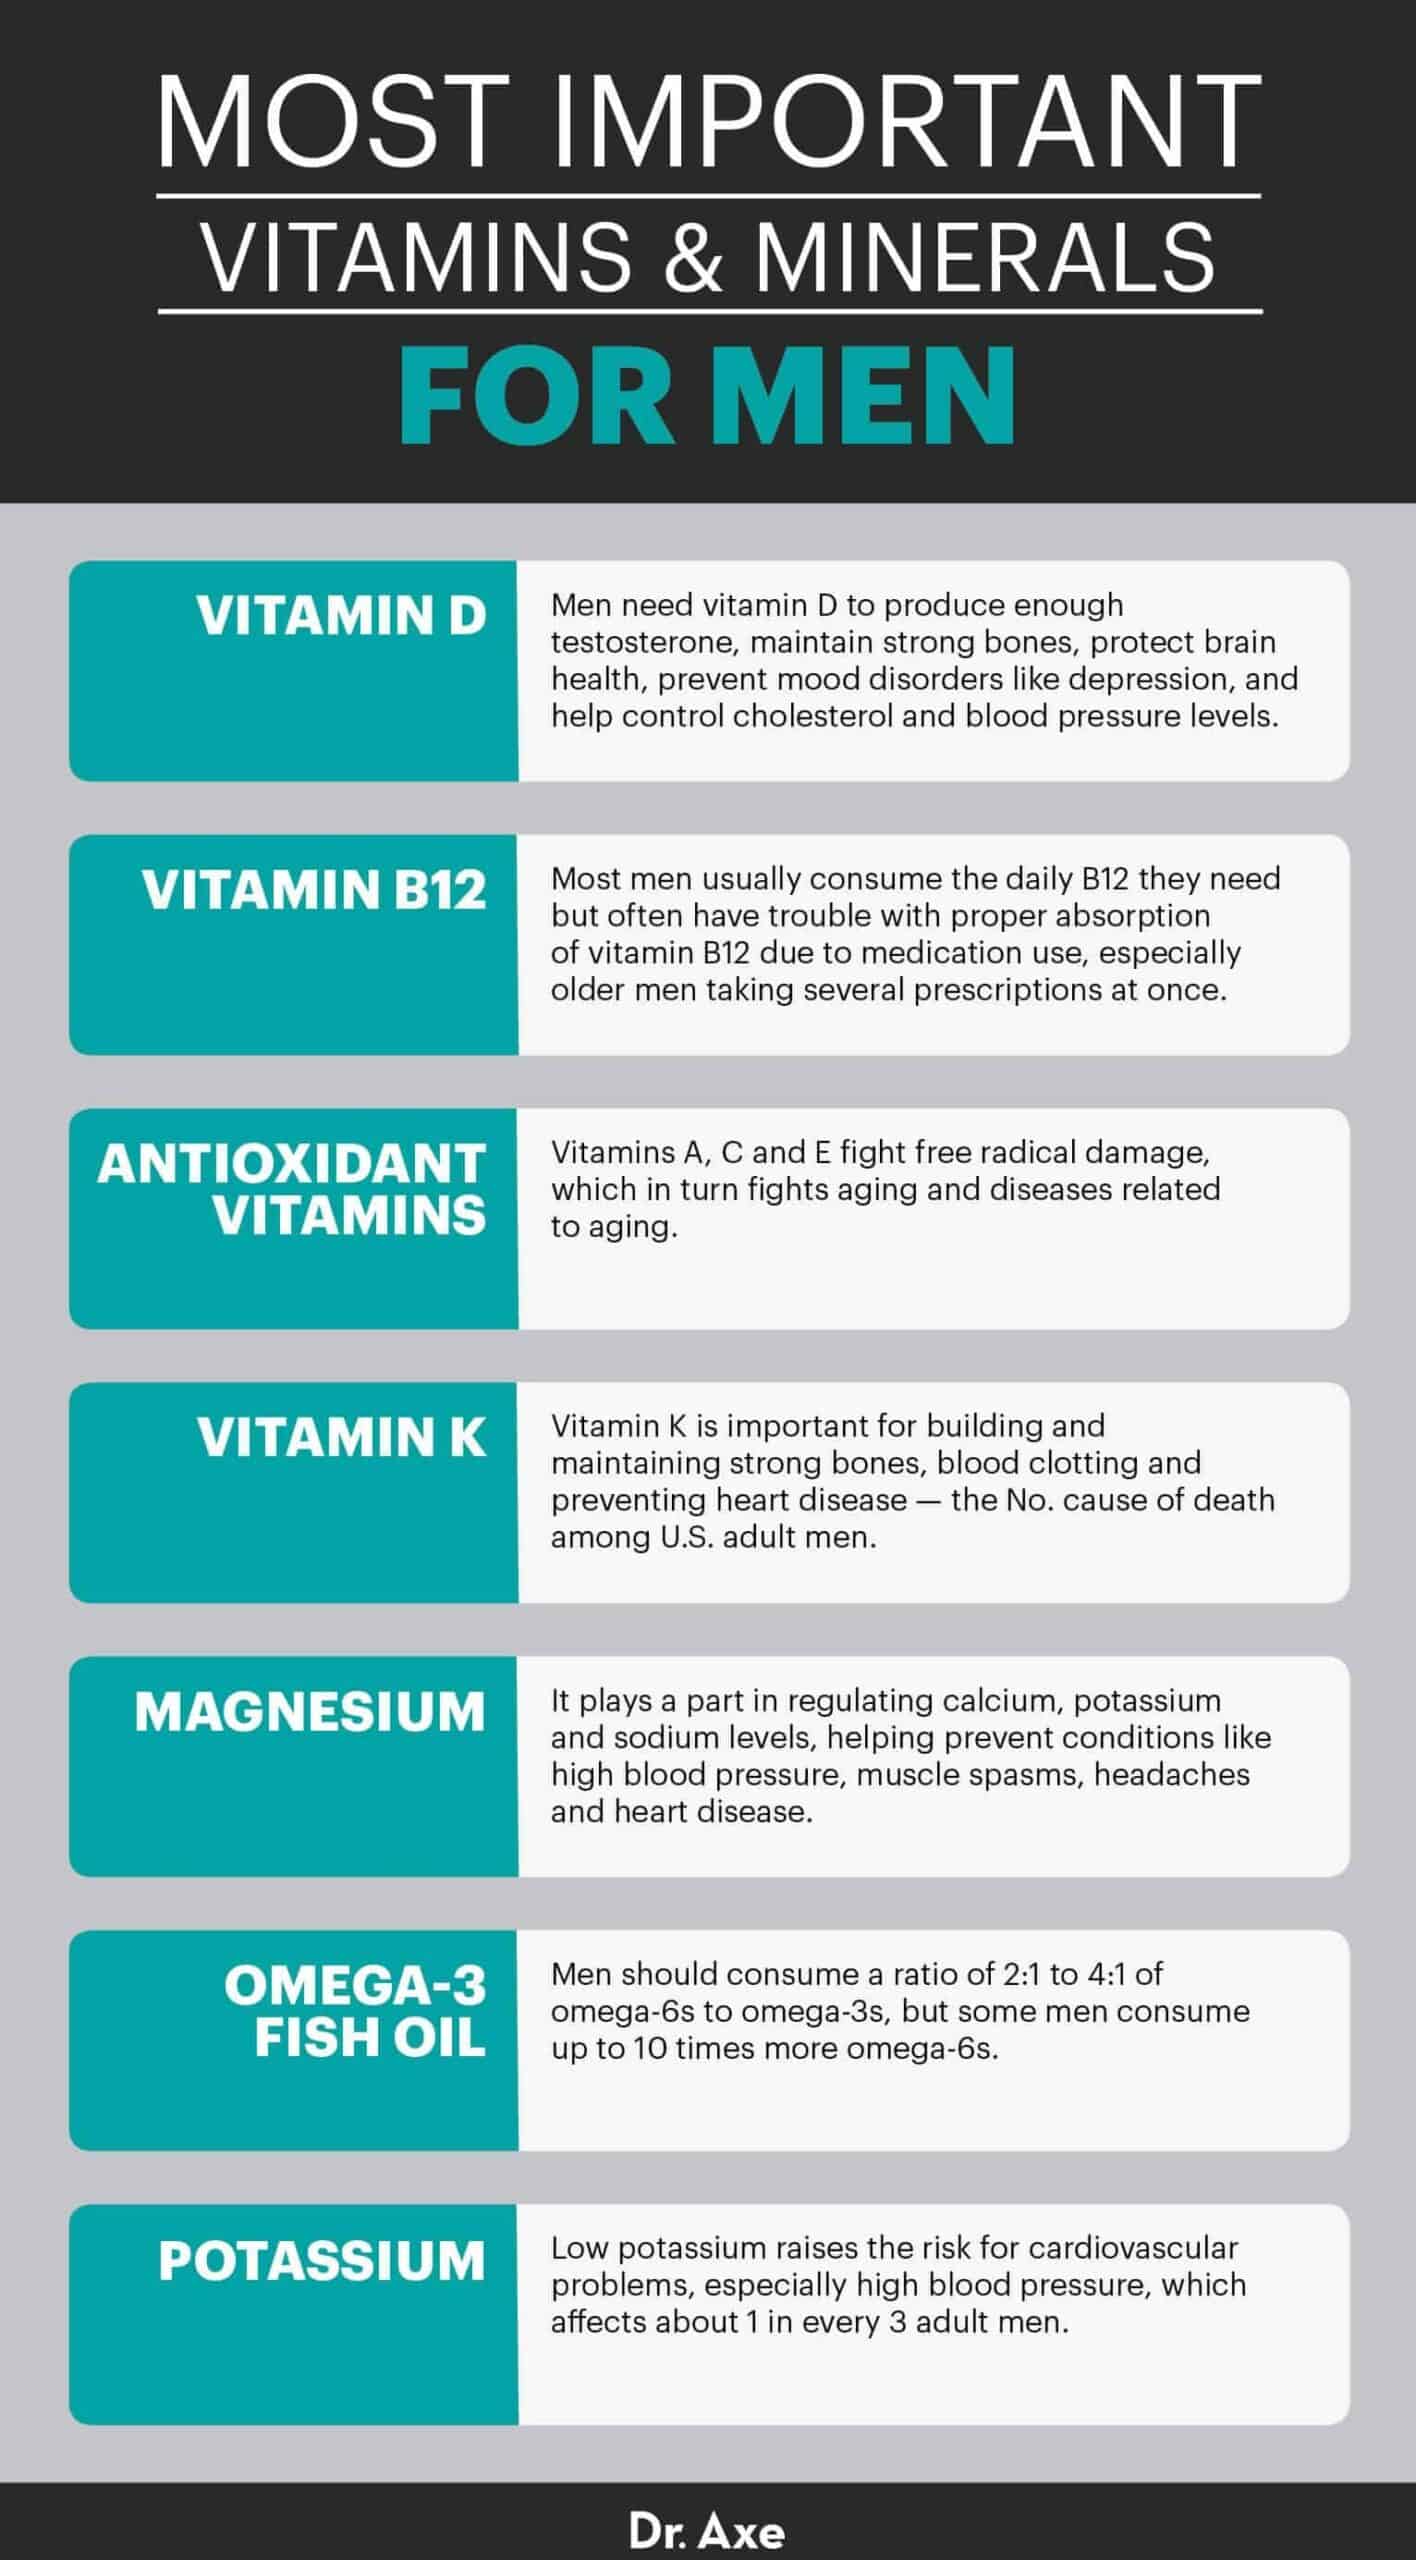 Best vitamins for men - Dr. Axe